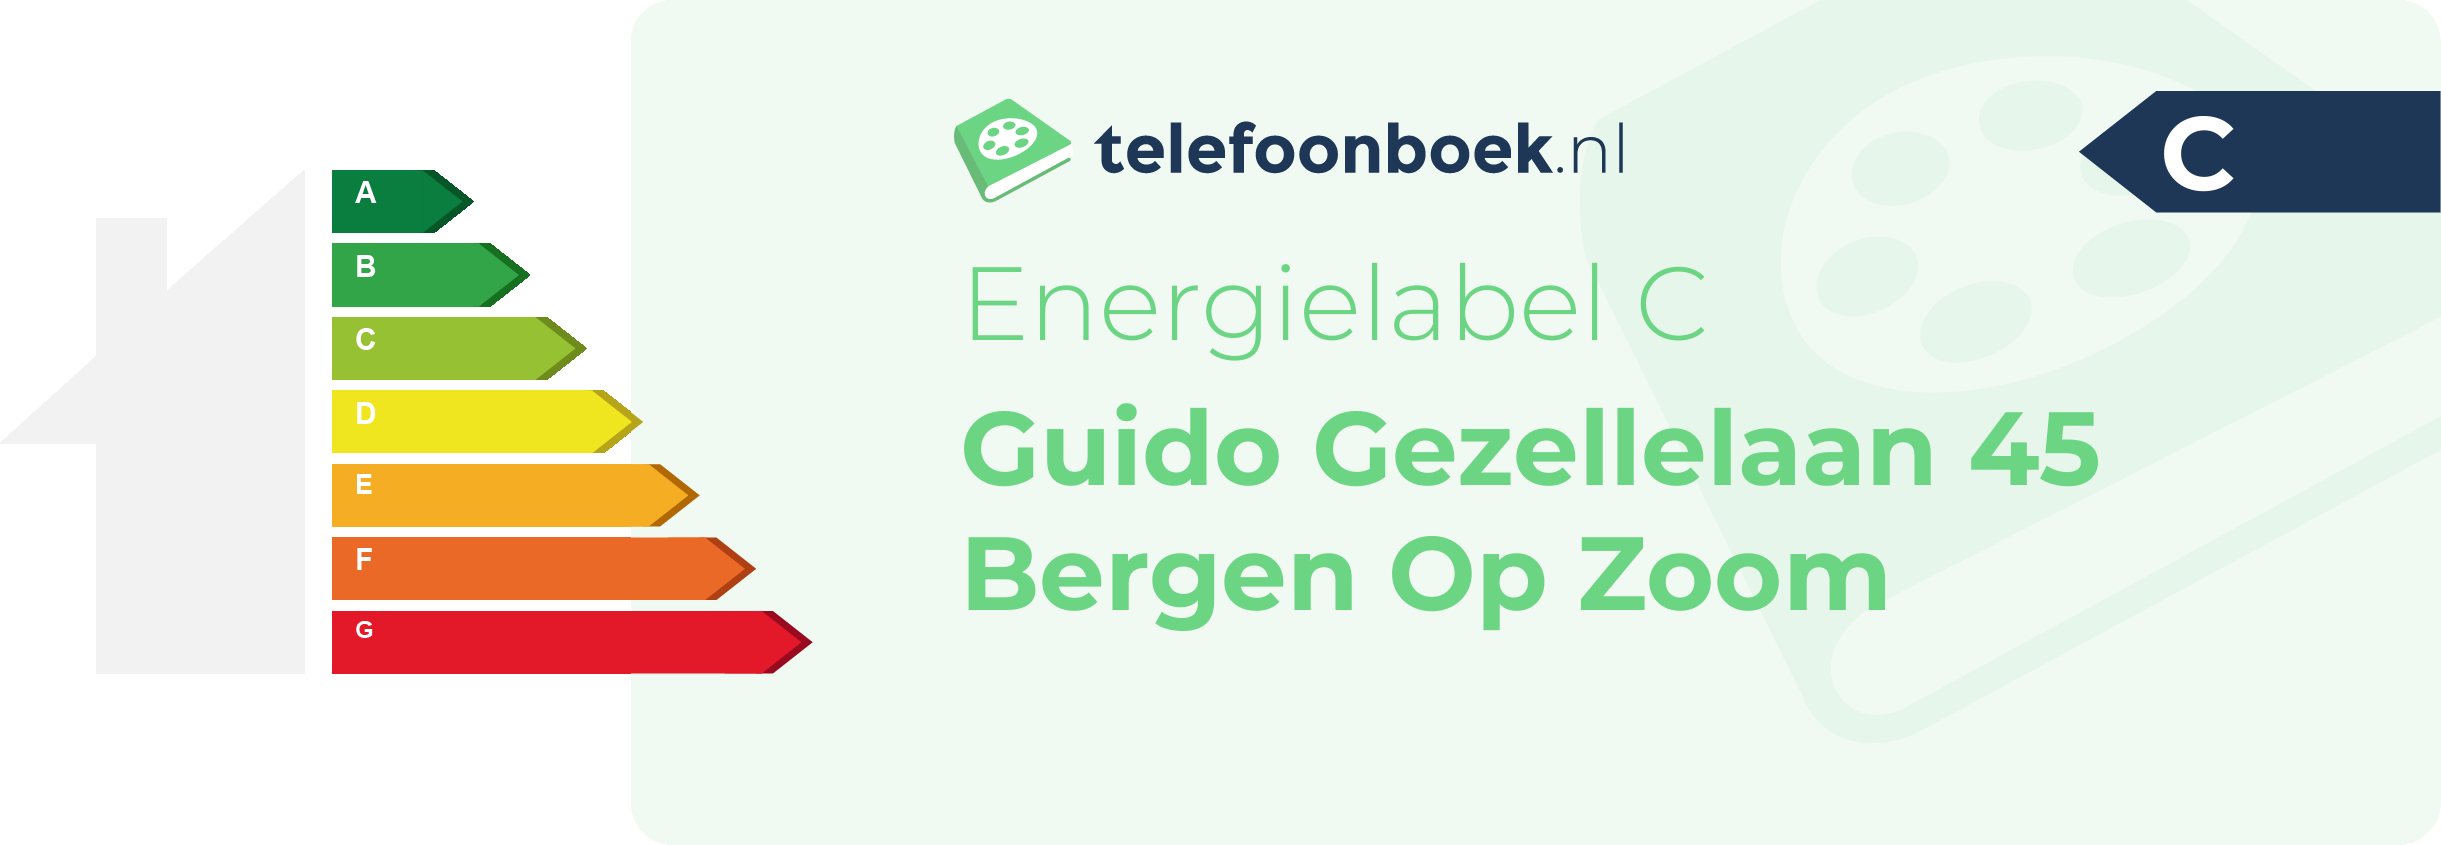 Energielabel Guido Gezellelaan 45 Bergen Op Zoom